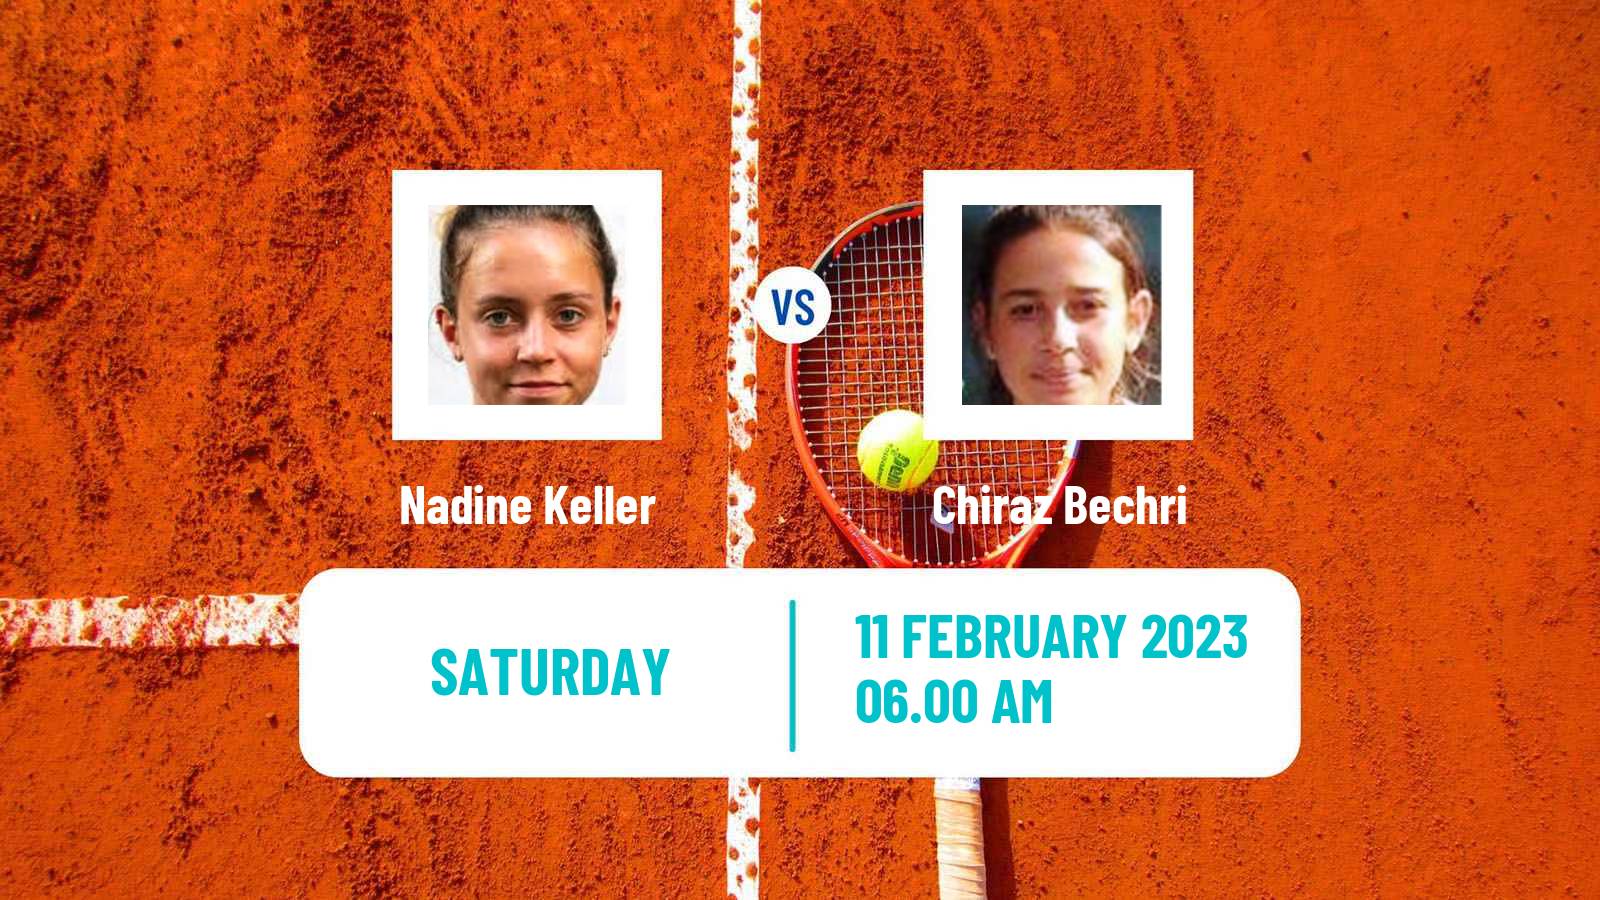 Tennis ITF Tournaments Nadine Keller - Chiraz Bechri